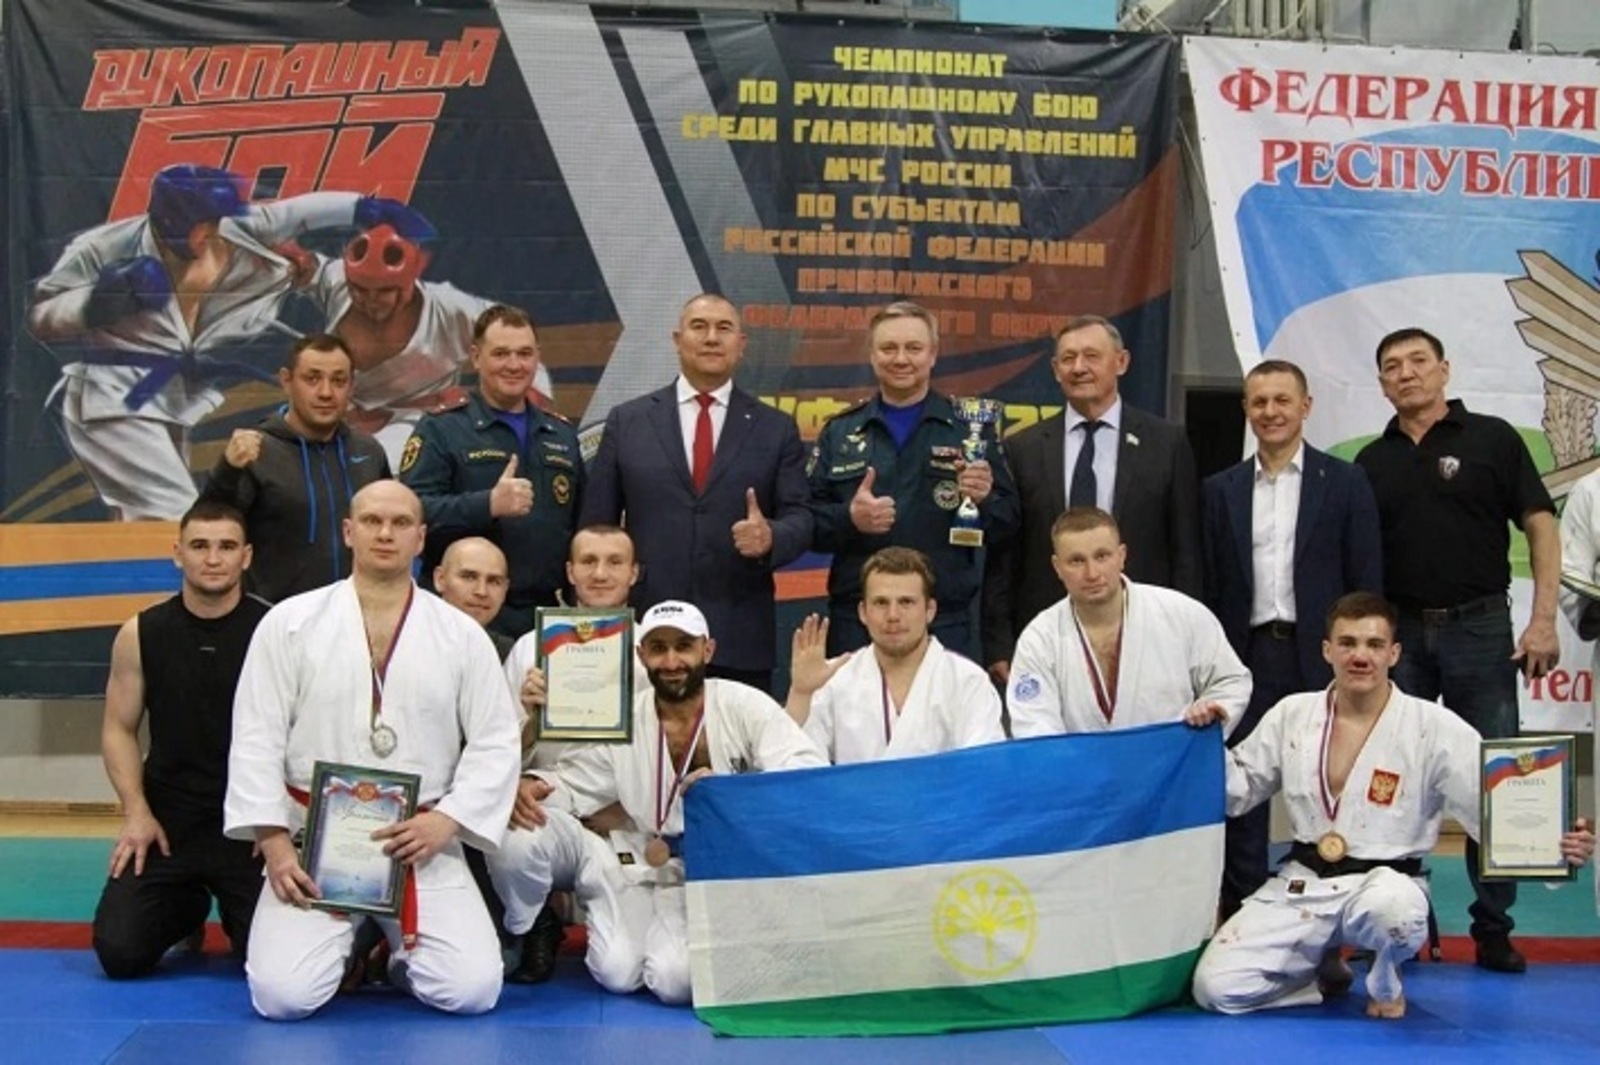 Спасатели Башкирии — чемпионы Приволжья по рукопашному бою